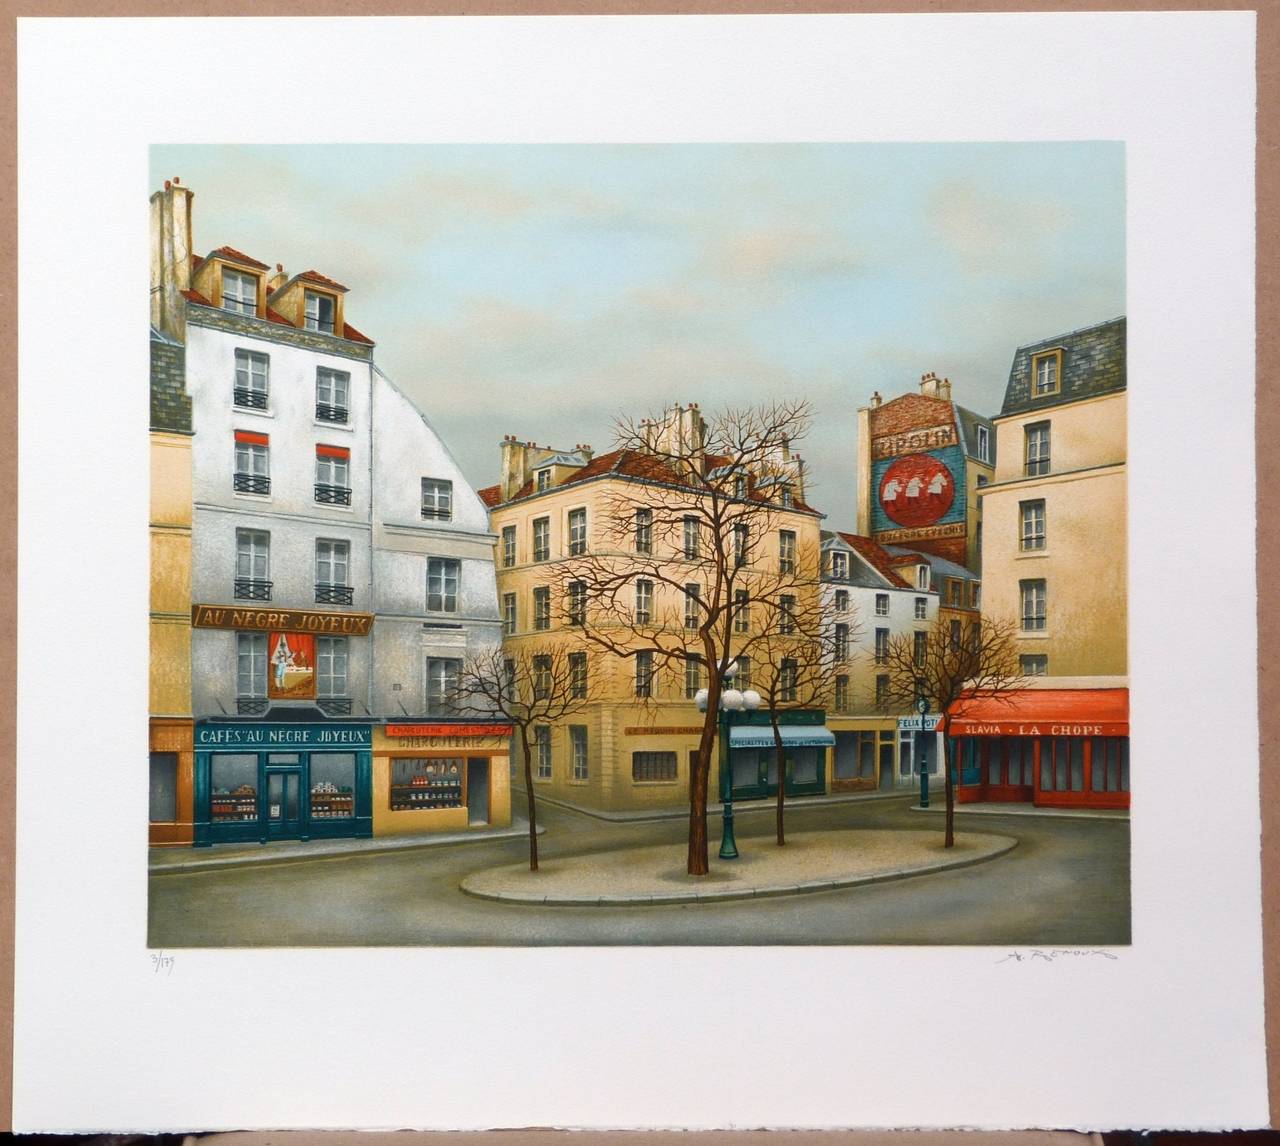 Place de la Contrescarpe, Paris, France - Print by André RENOUX